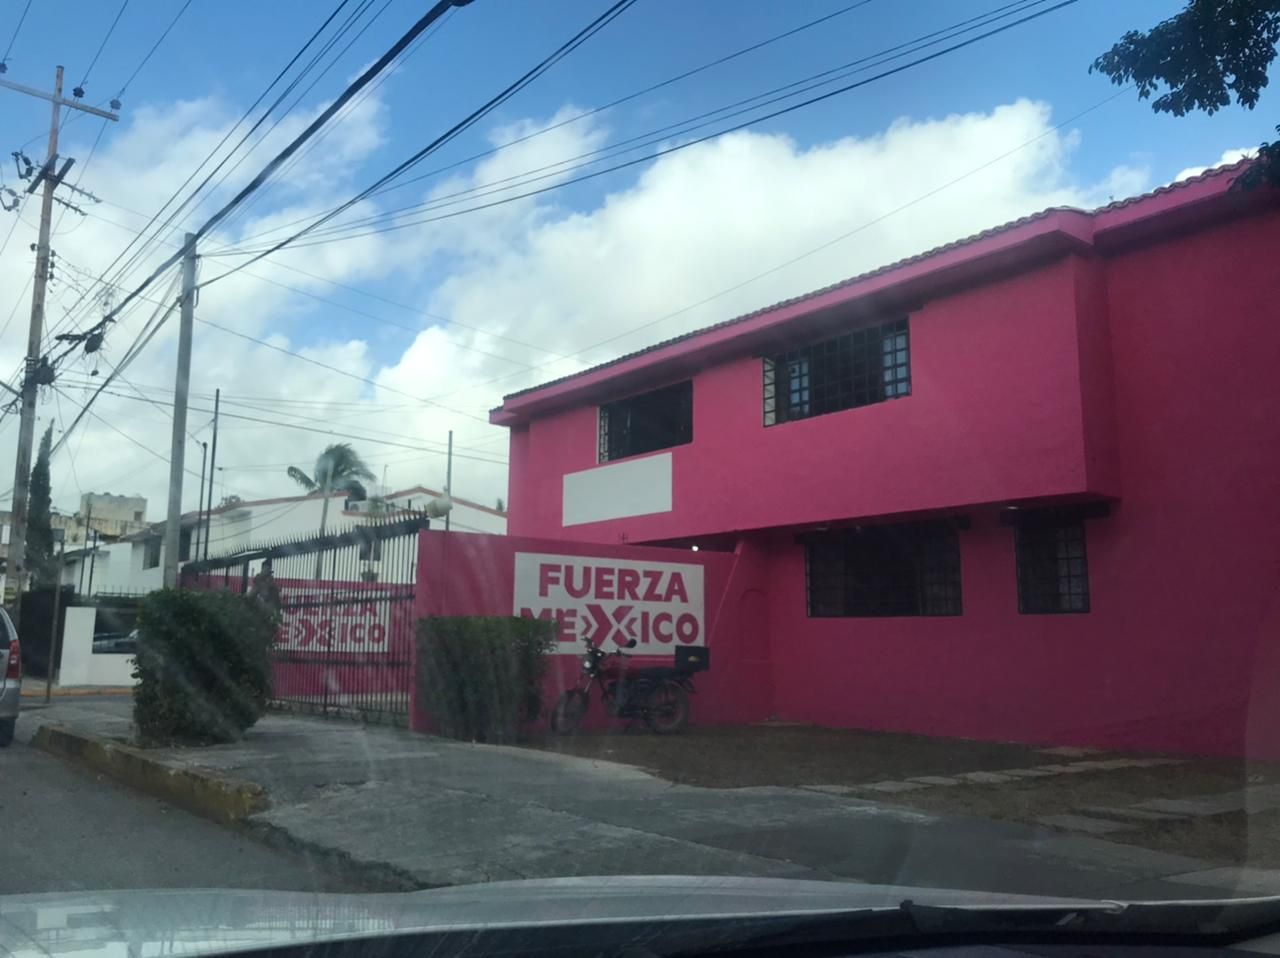 Mella el prestigio de respetado candidato de Cancún obra irregular de su casa de campaña a sus espaldas

